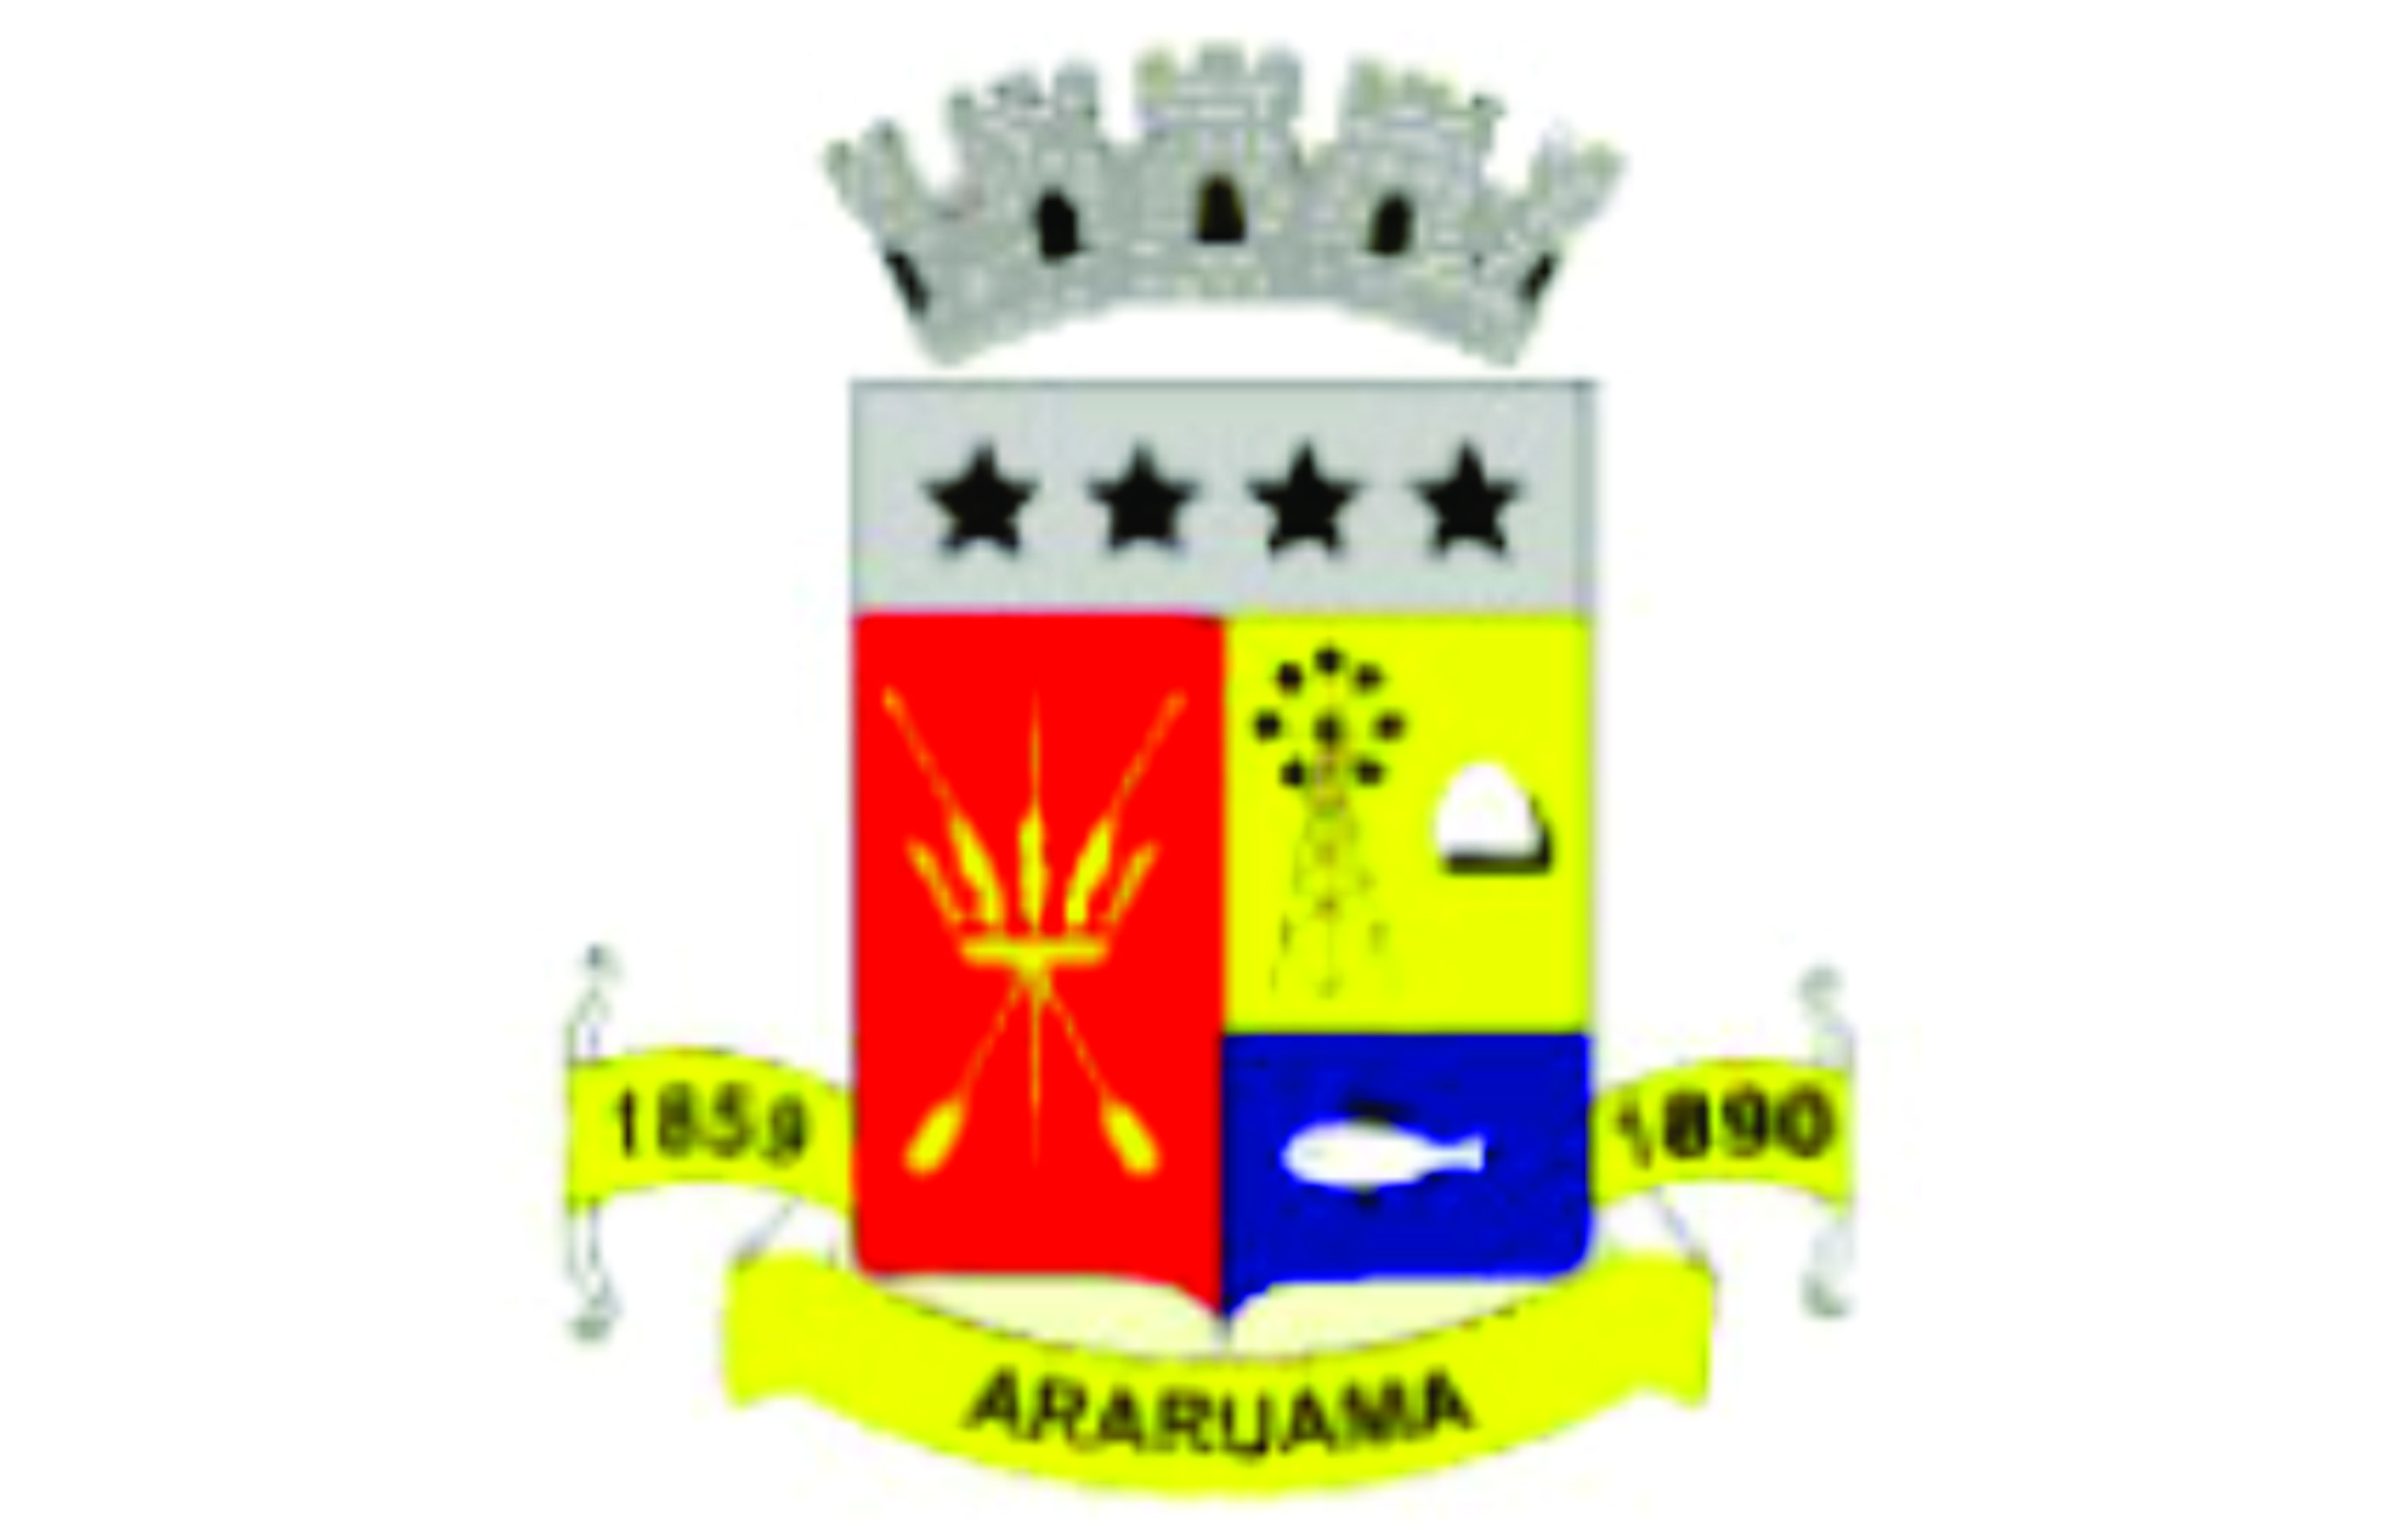 Araruama